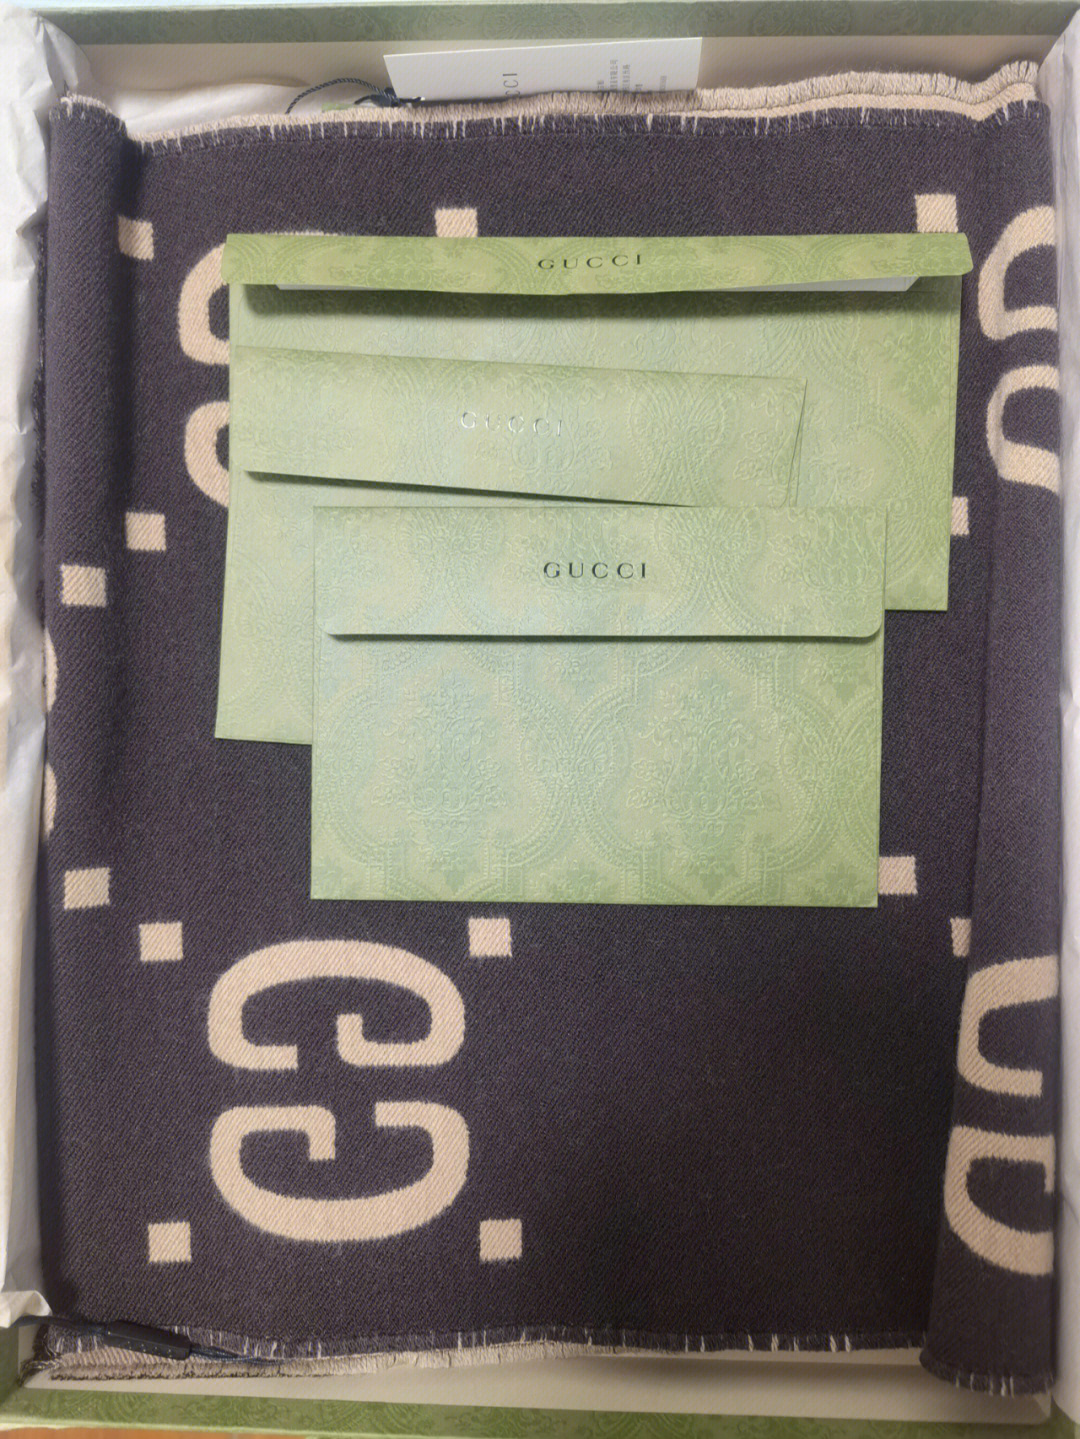 第二天就到了gucci的绿色包装盒真的惊艳,最喜欢这个盒子了羊毛围巾比